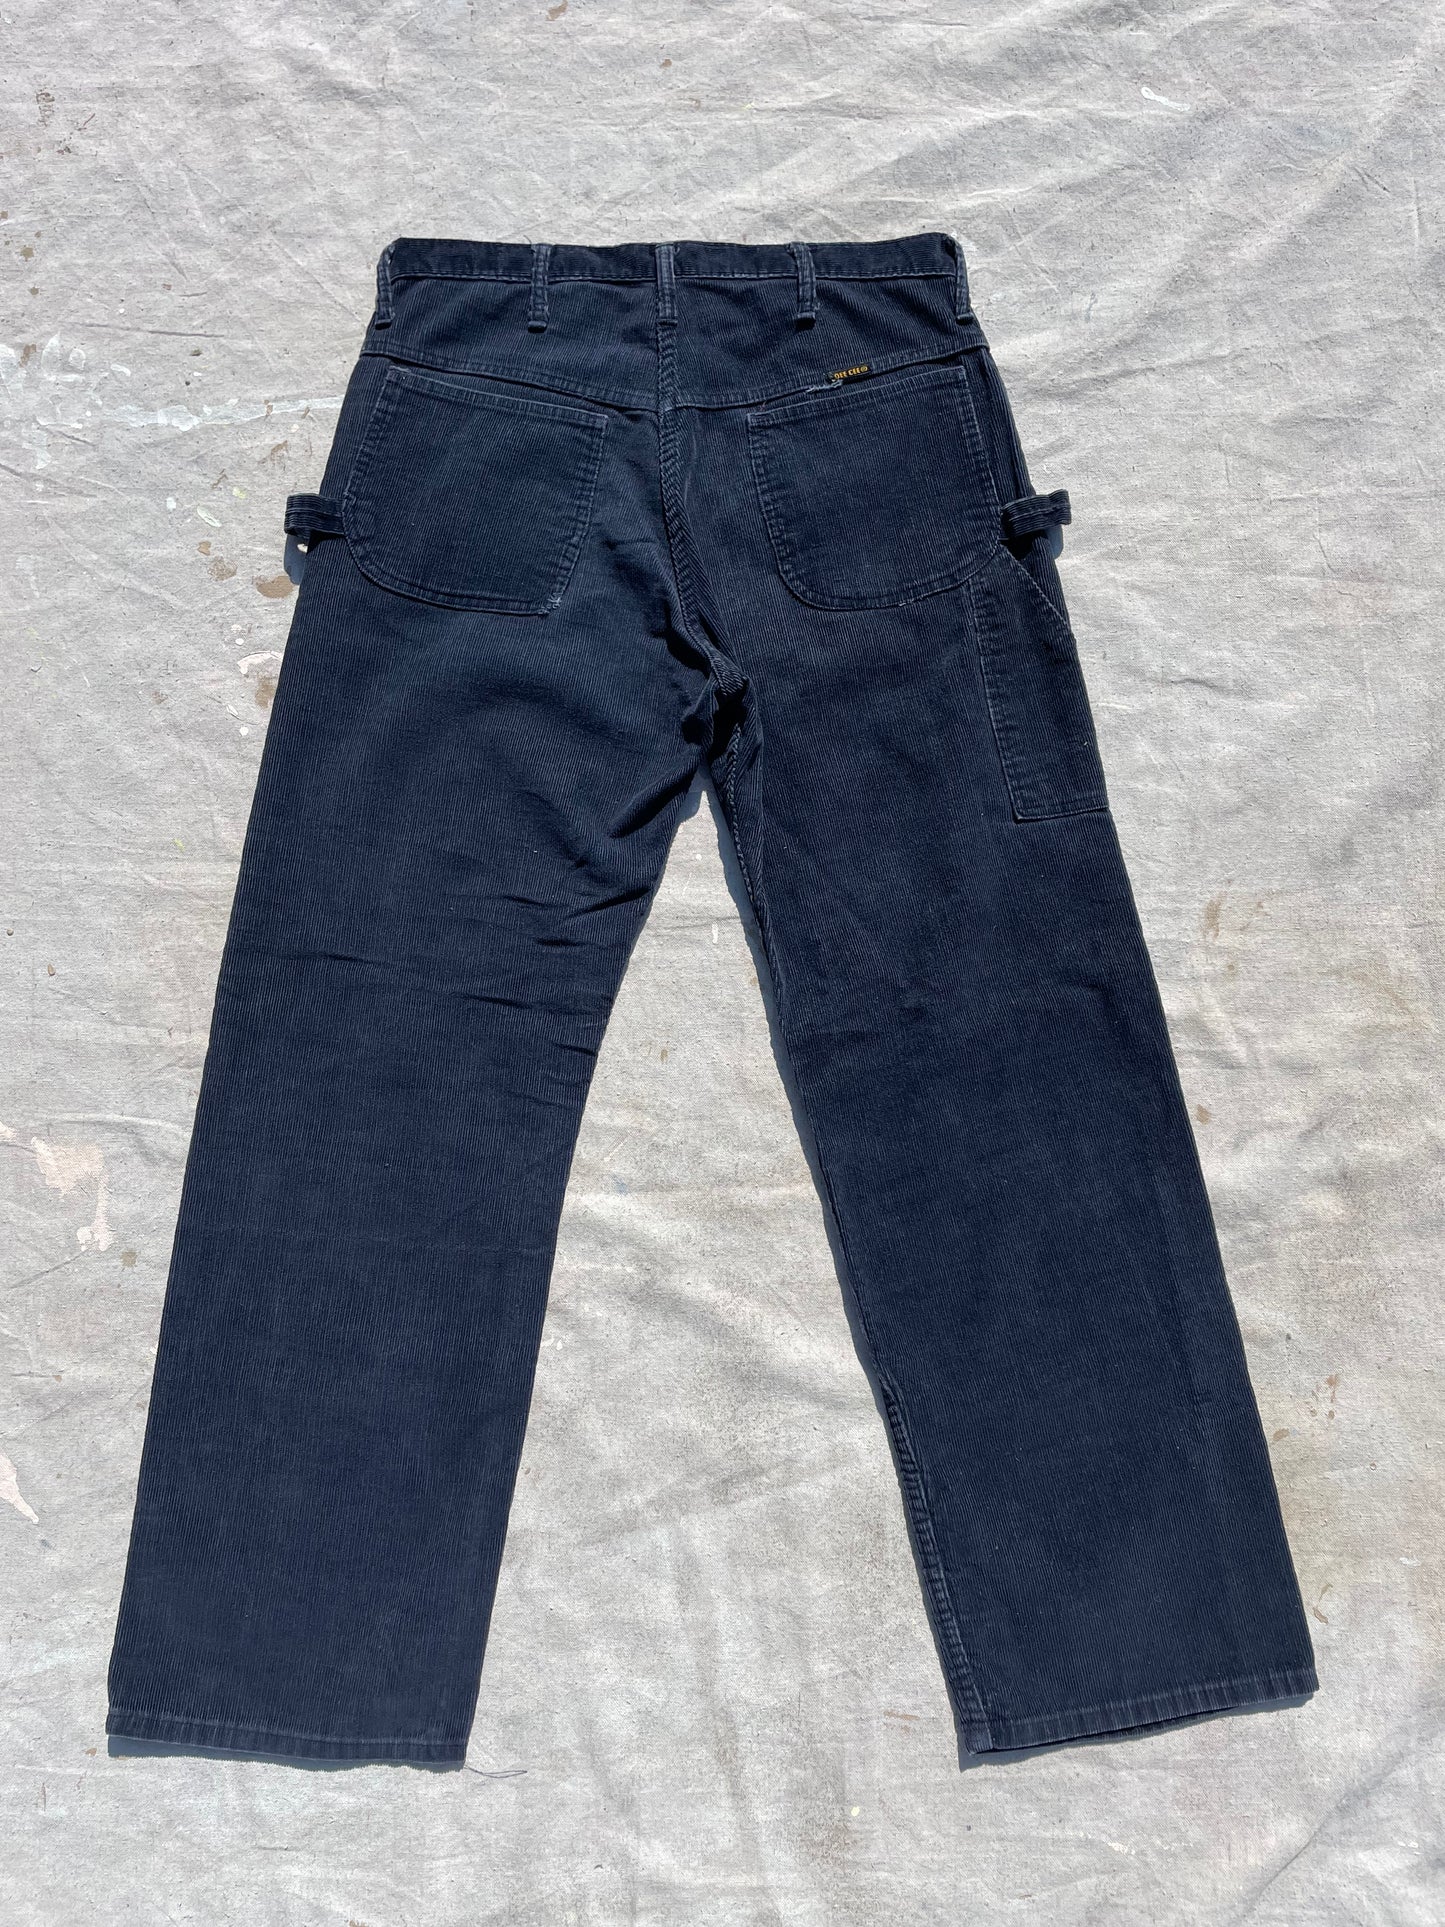 70s/80s Corduroy Navy Blue DeeCee Carpenter Pants